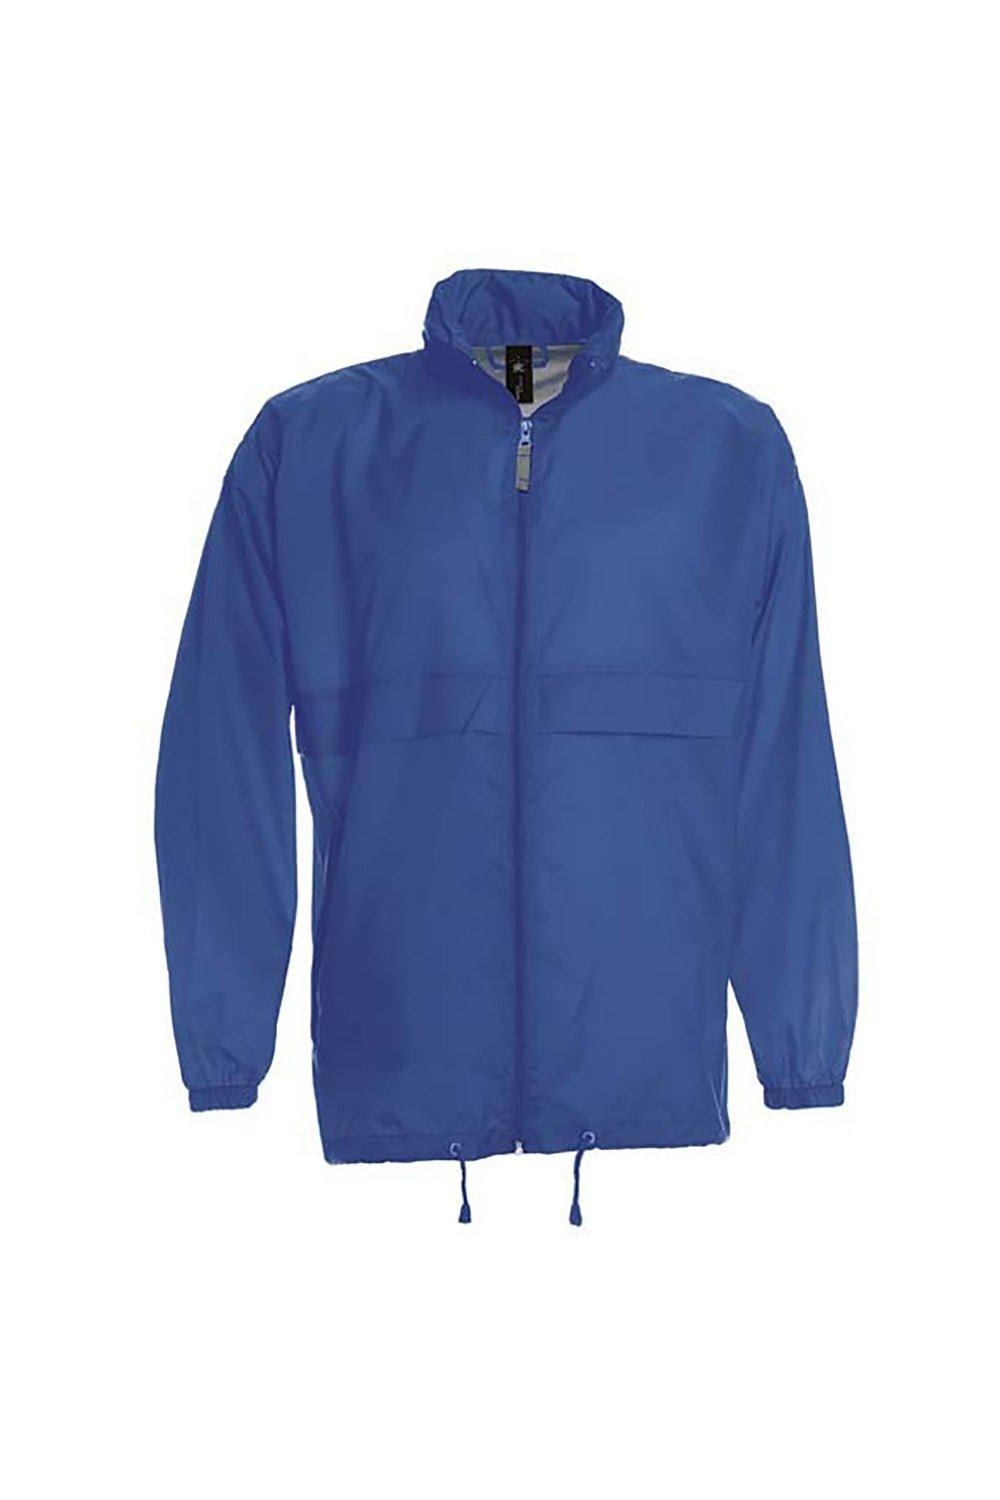 Легкая куртка Sirocco Наружные куртки B&C, синий